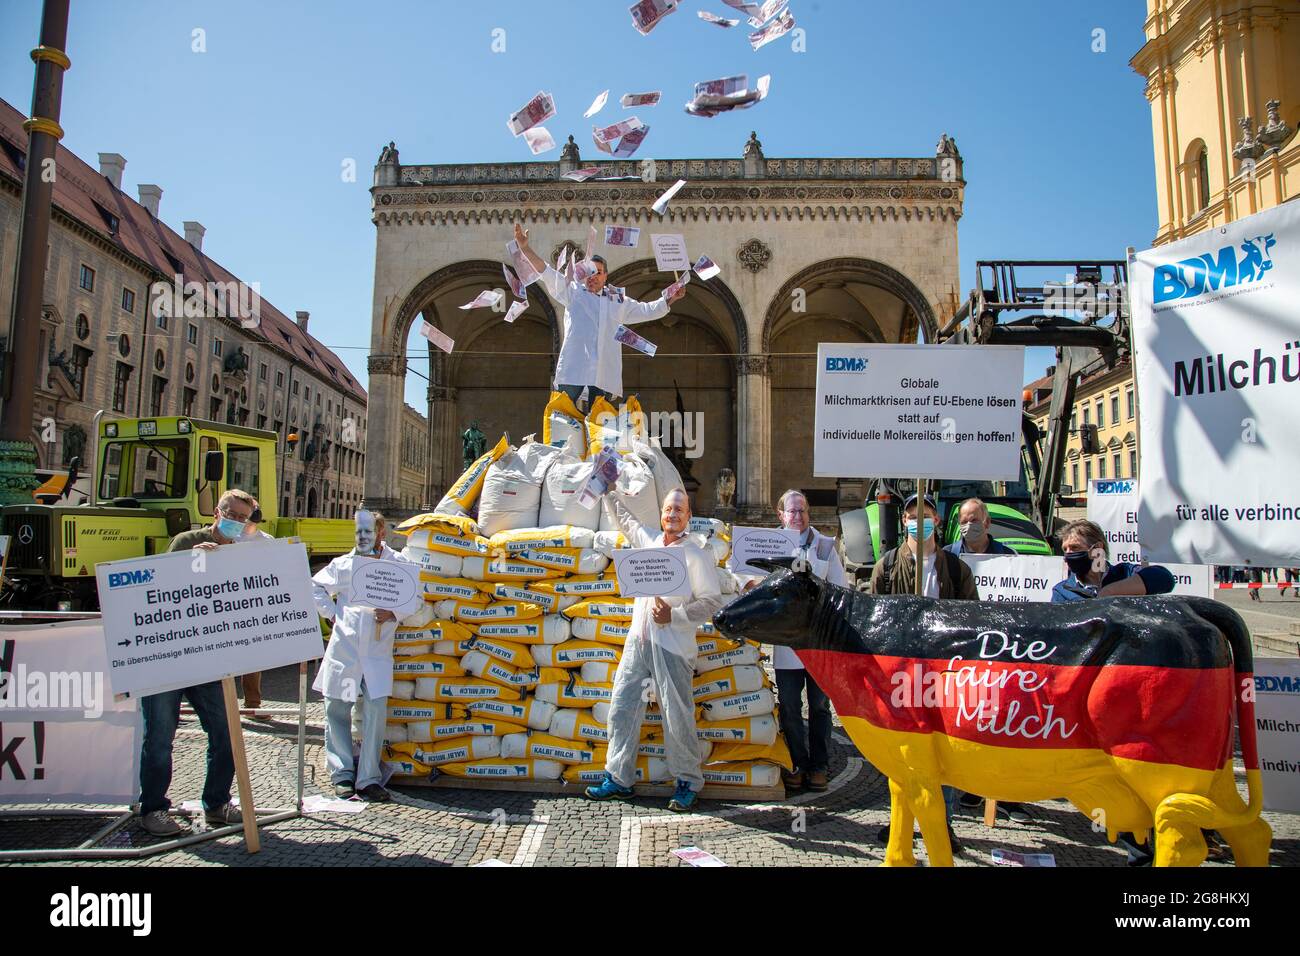 Demonstrant voller Geld, der die macht der Milch Konzerne symboliziert mit einem sarkastischen Schild: ' Billie Milch abholen & mit staatlichen Zuschuss einlagern. für uns vince! ' und wirft mit Geld um sich. Er steht auf 300 Säcke mit Milchpulver und Demonstranten mit Schilder und einer Milchkuh in Deutschlandfarben 'die faire Milch'. Am 18. Maggio 2020 haben zahlreiche Milchbauern für einen Milchpreis von mindest 40 cent demonstriert. Durch die Corona Krise ist Milchpreis Global deutlich gefallen und der BDM fordert einen staatlichen Eingriff. München, 18. Maggio 2020. (Foto di Alexander Pohl/ Foto Stock